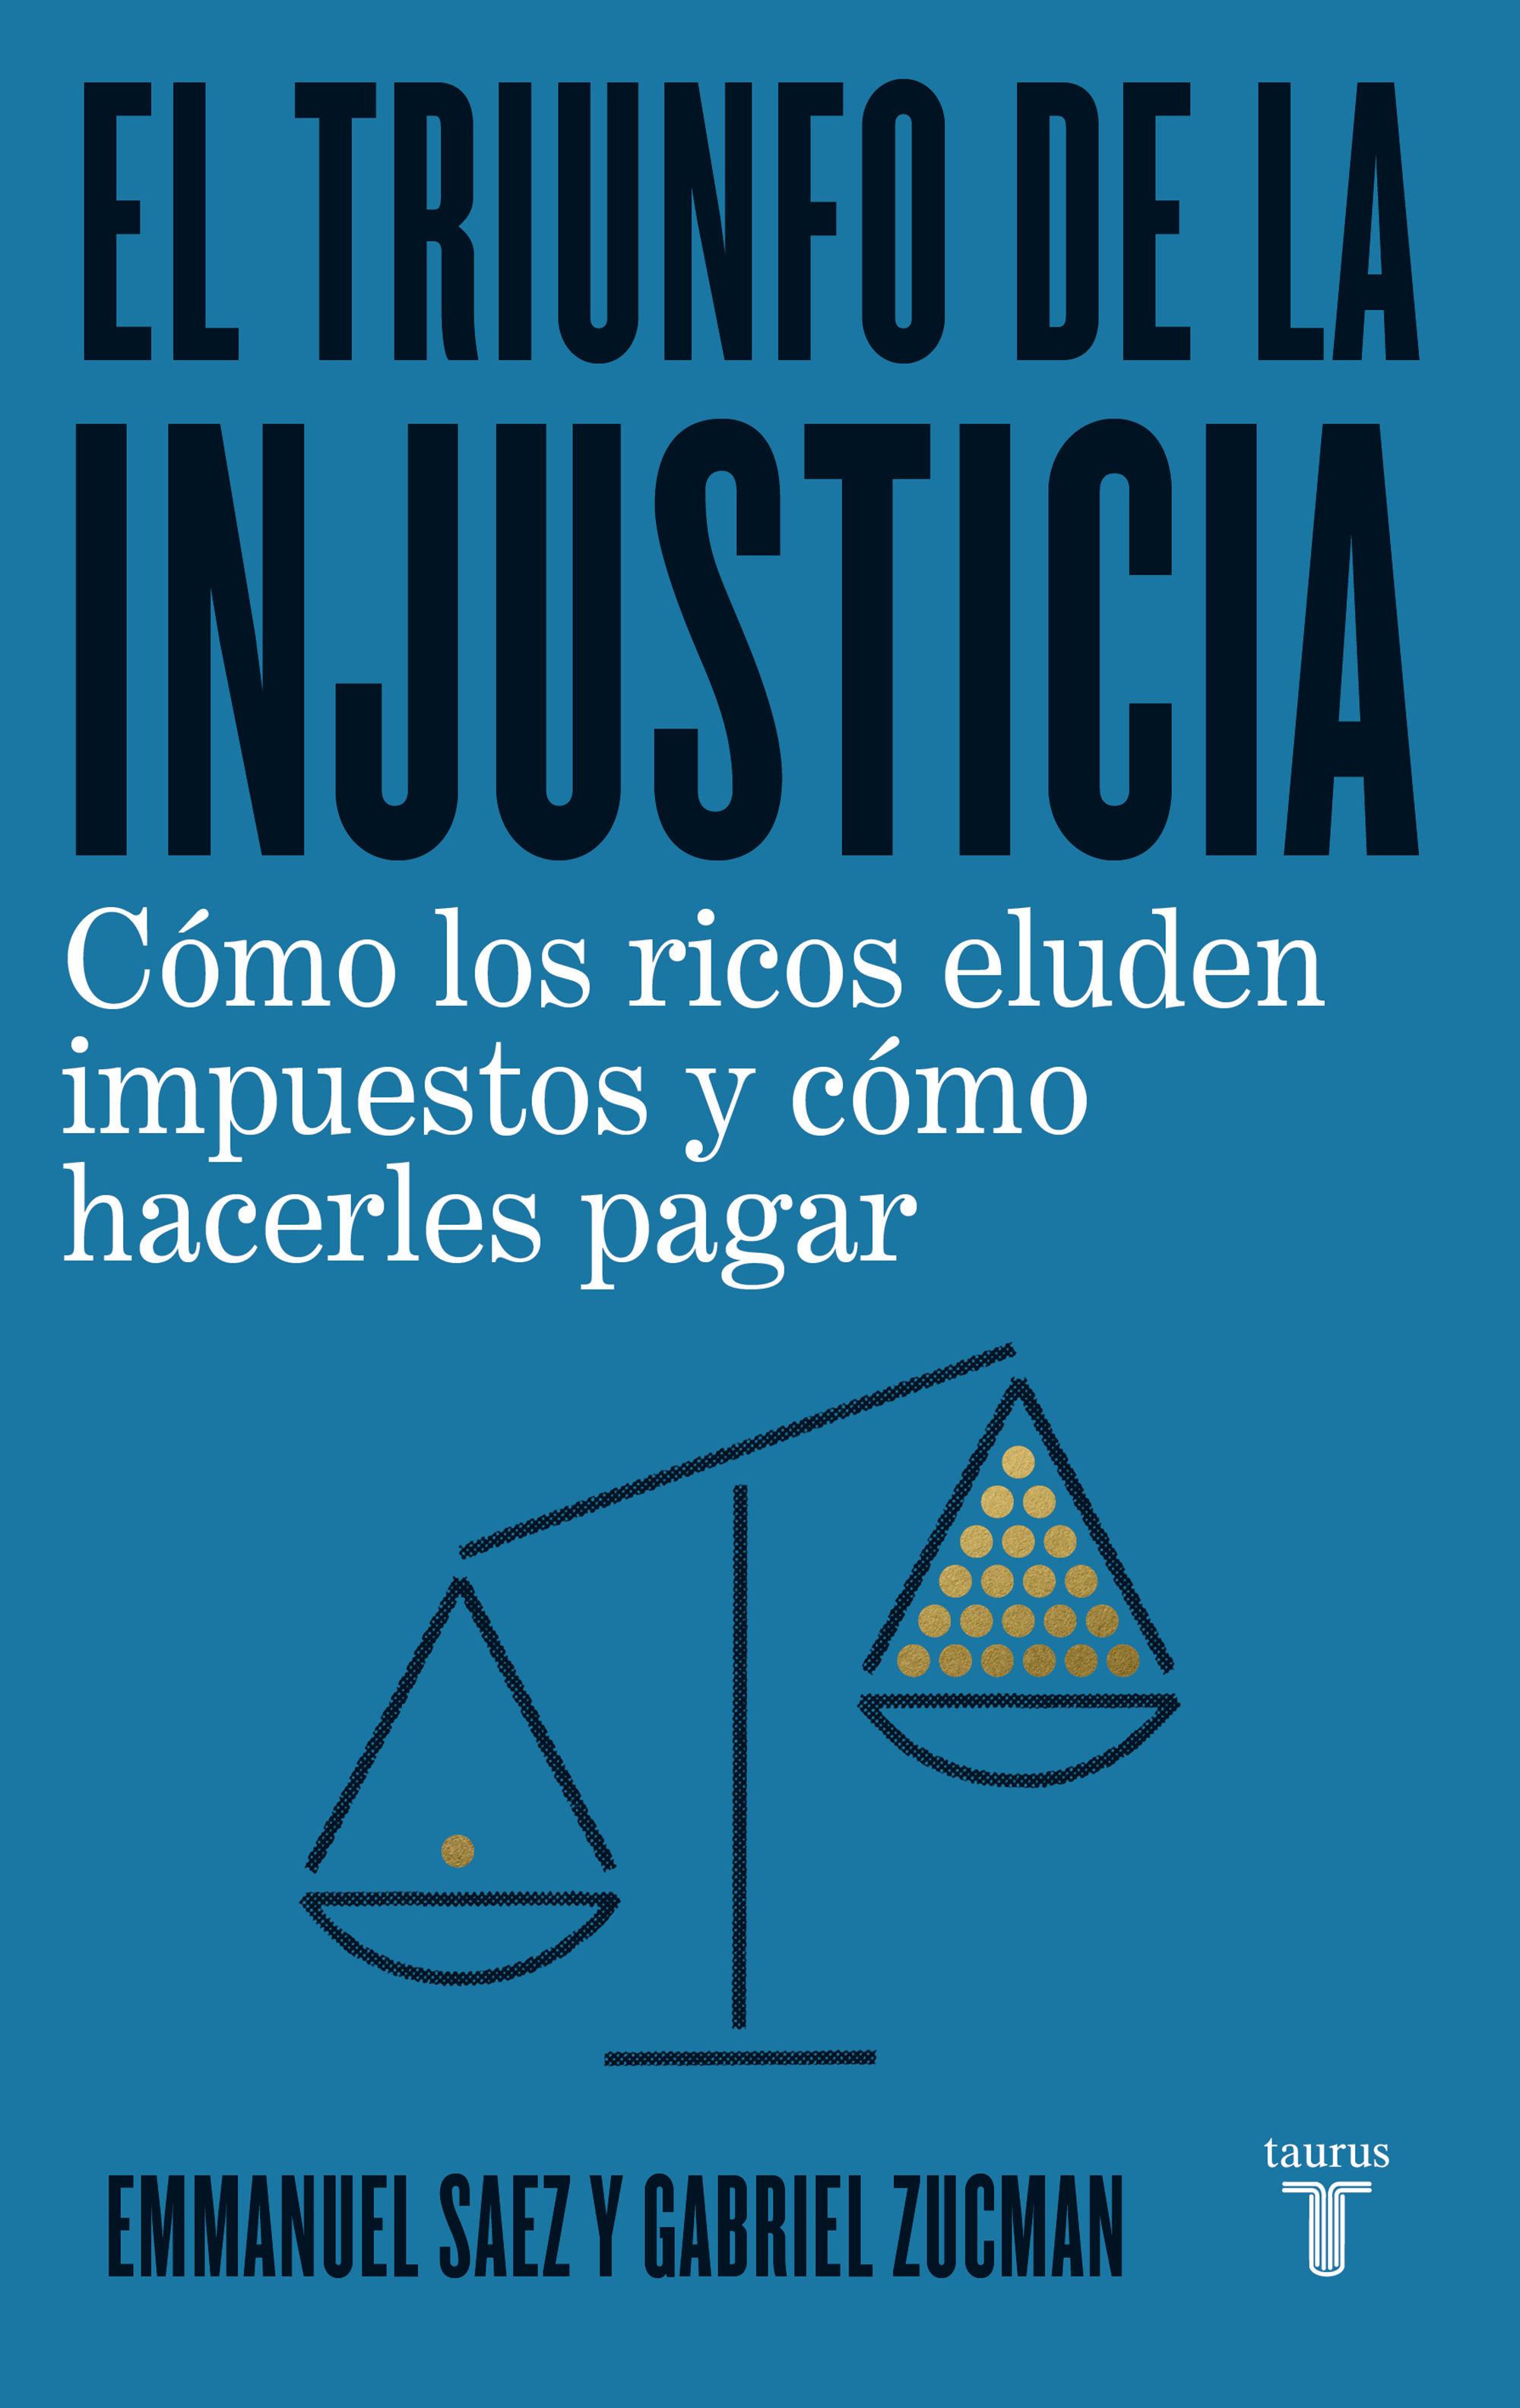 EL TRIUNFO DE LA INJUSTICIA. CÓMO LOS RICOS EVADEN IMPUESTOS Y CÓMO HACER QUE PAGUEN